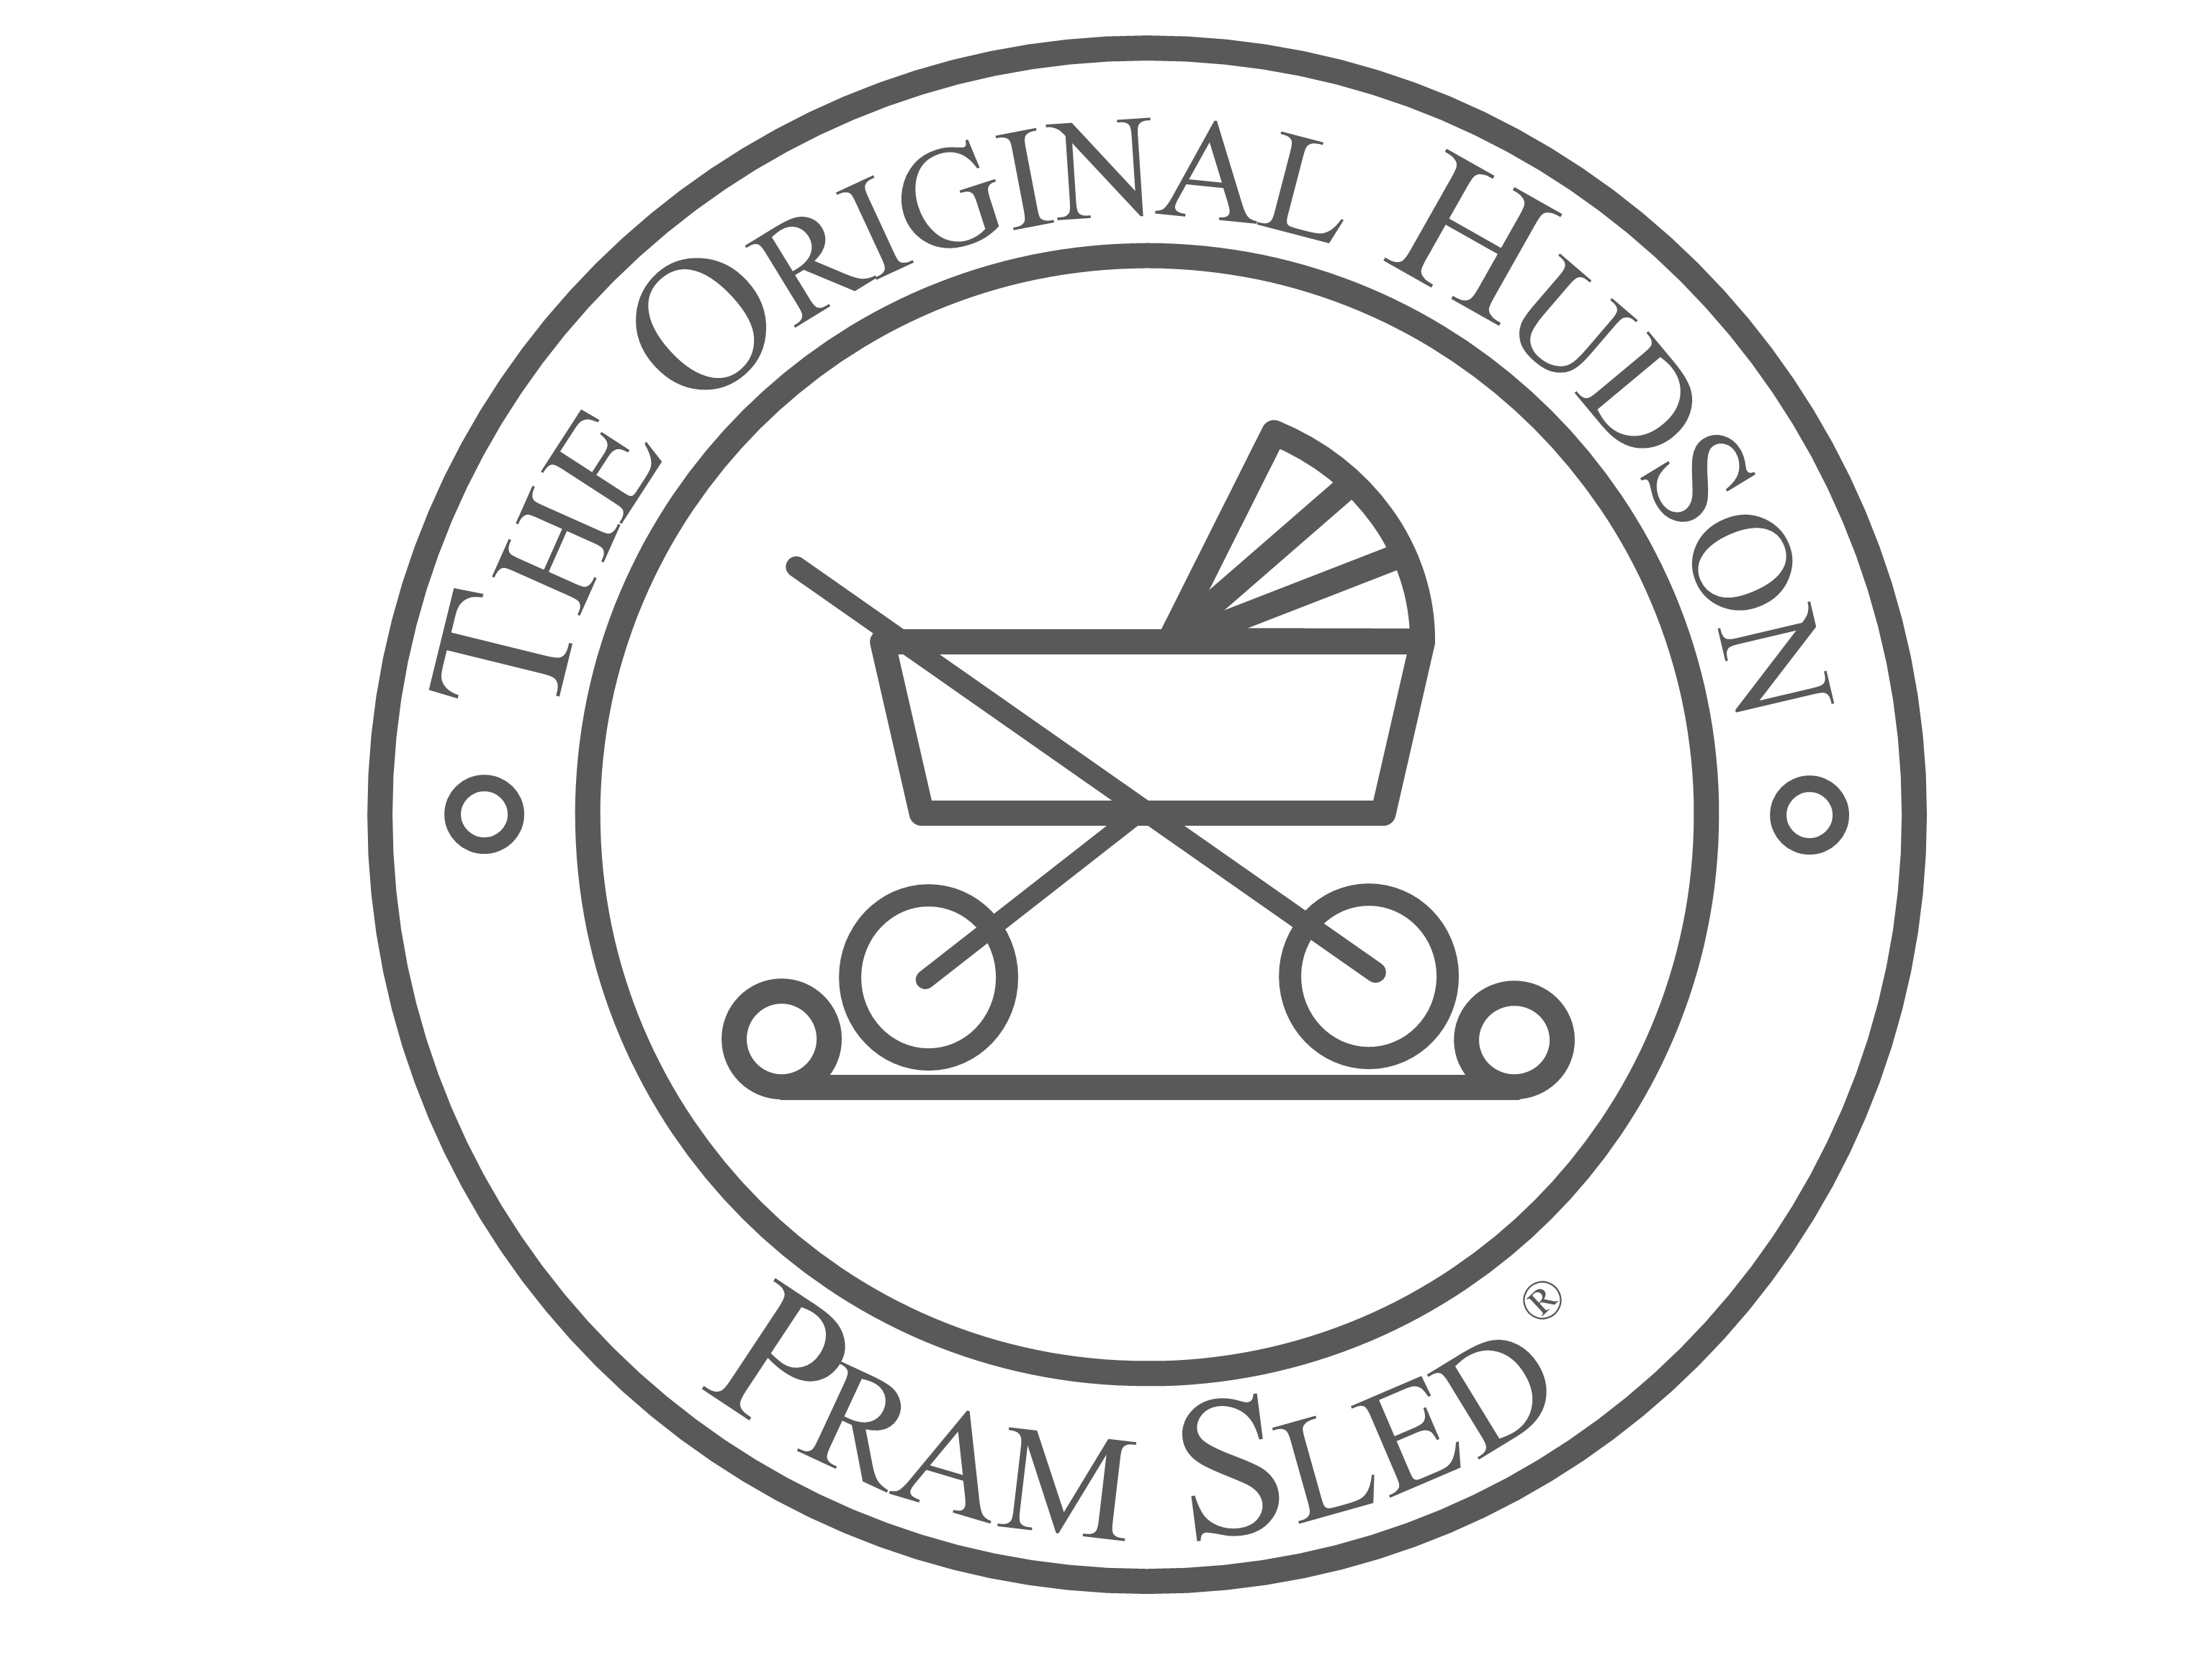 Pram Sled 's logo